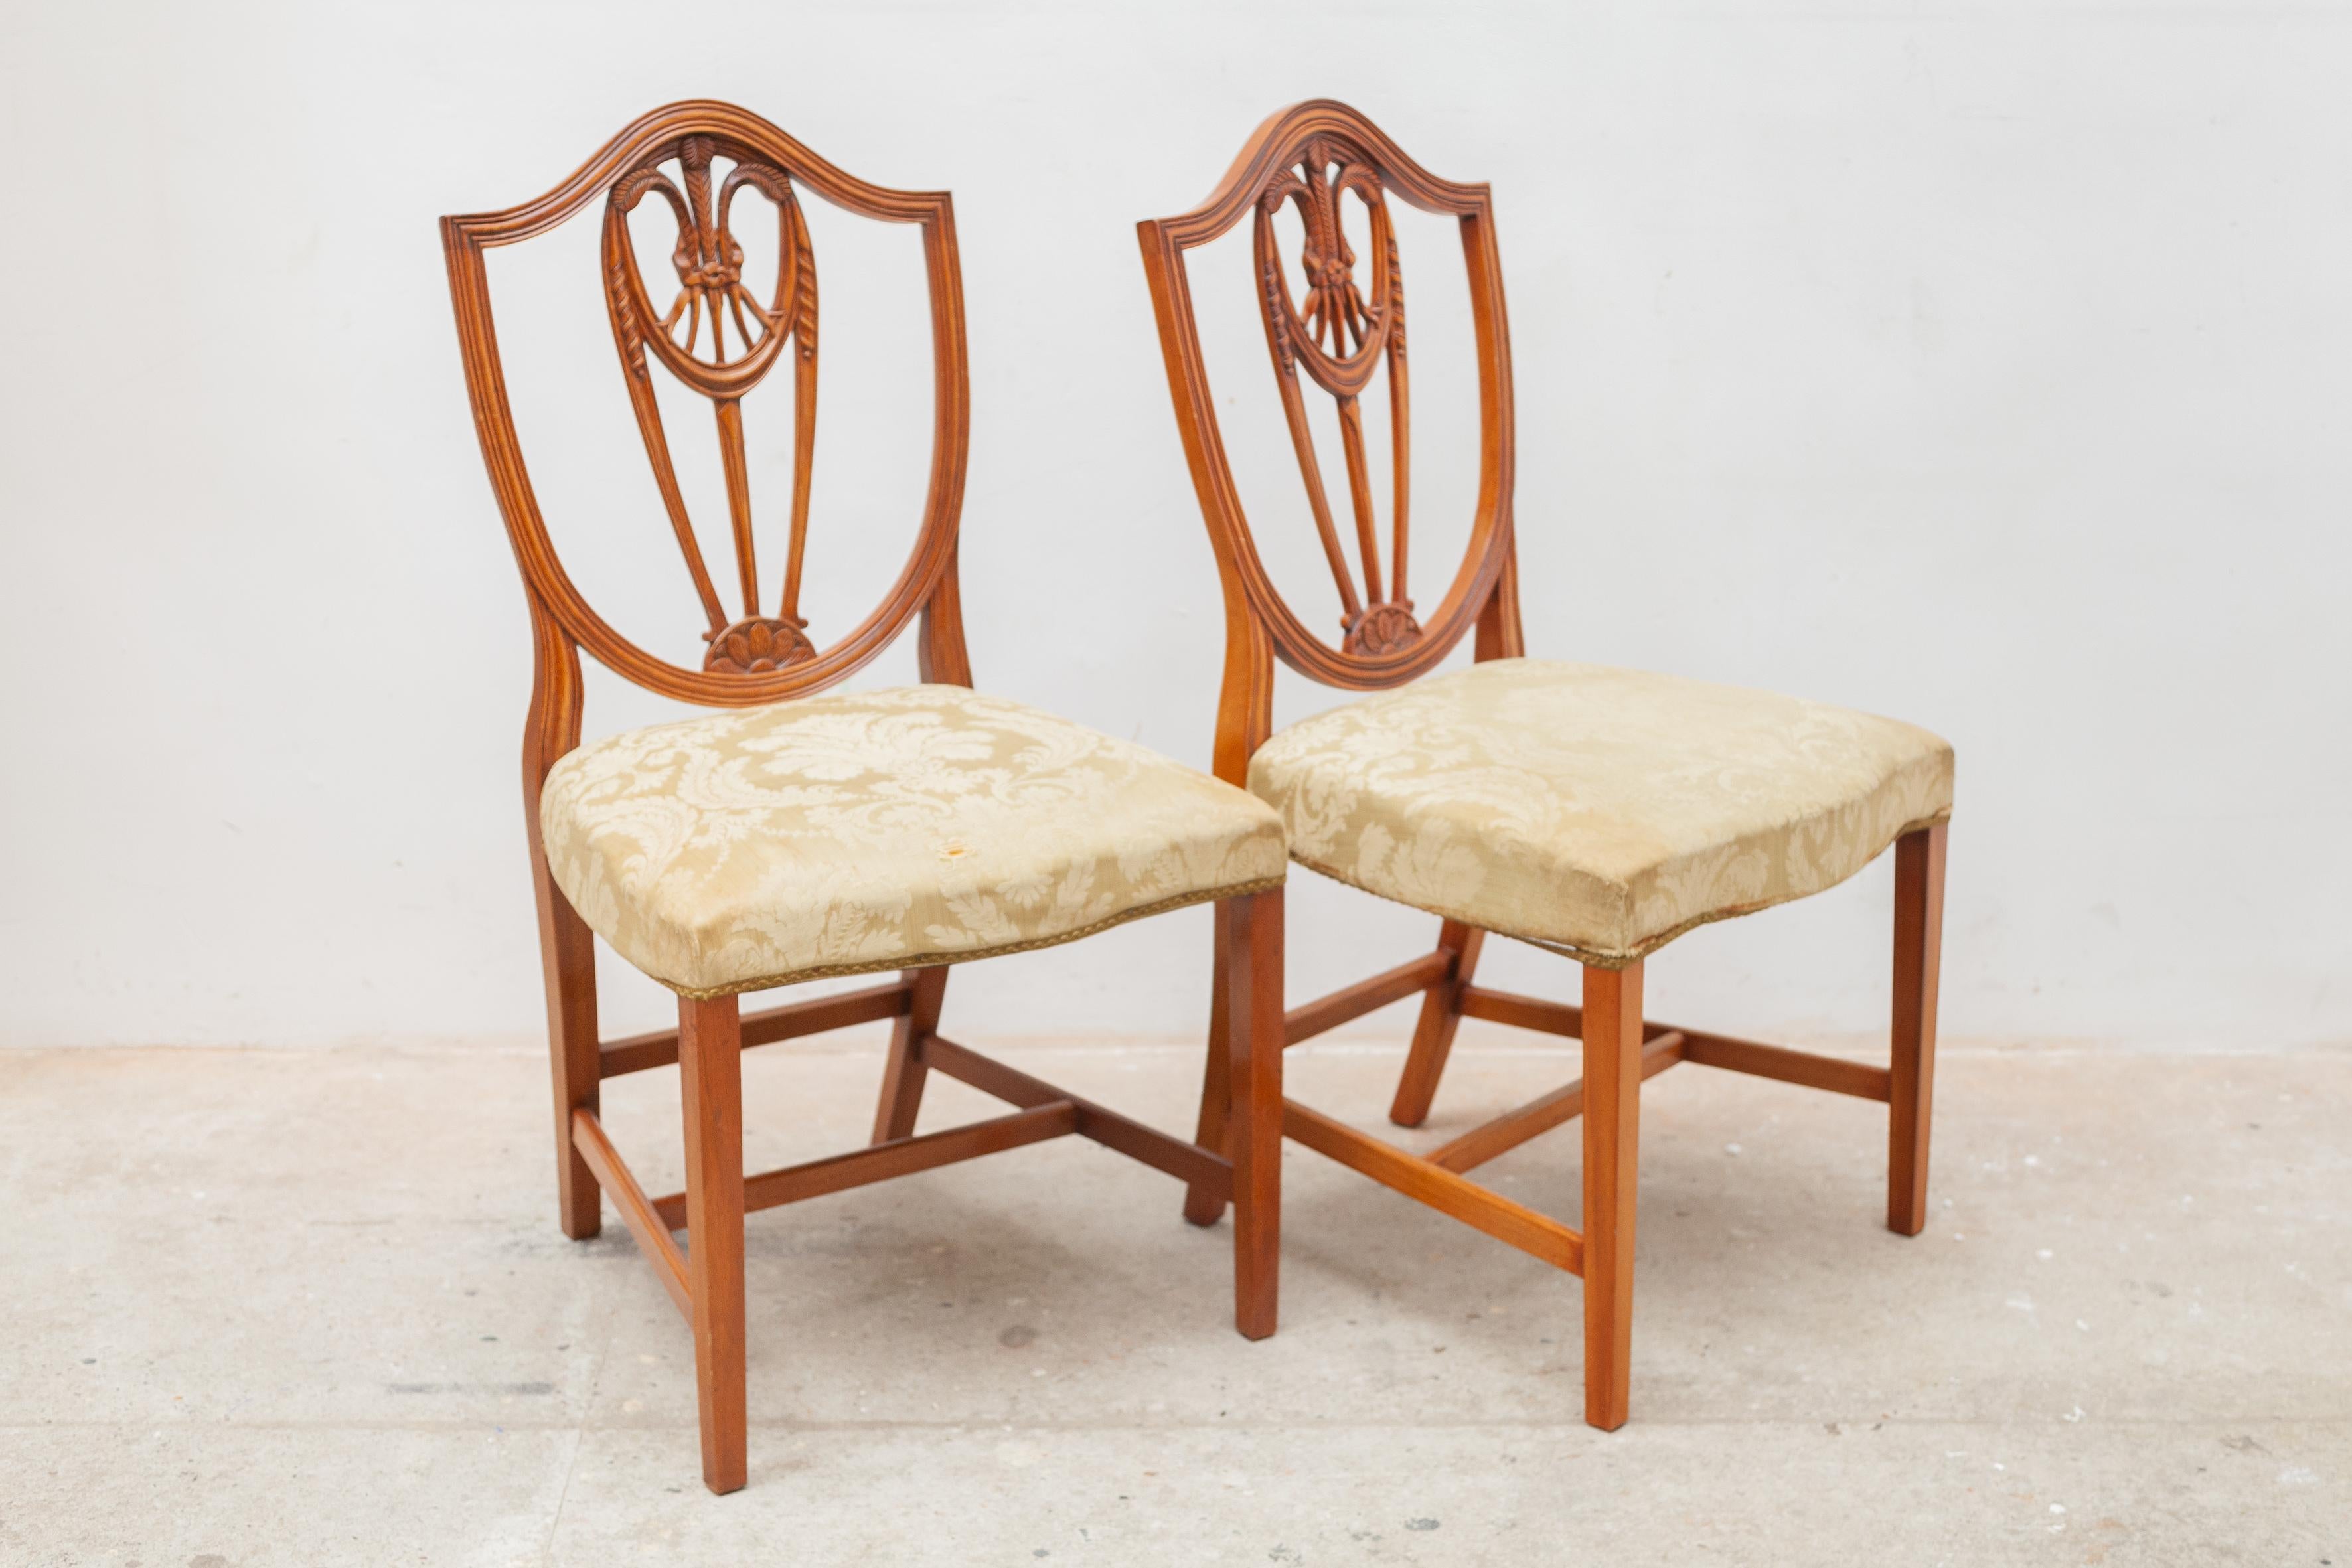 Dieser schöne Satz von sechs Stühlen im Georges-3-Stil aus massivem Satinholz zeichnet sich durch eine Rückenlehne mit zentralem Weizengarbenmuster im Hepplewhite-Stil aus. Sie haben goldfarbene gepolsterte Sitze und stehen auf spatenförmigen